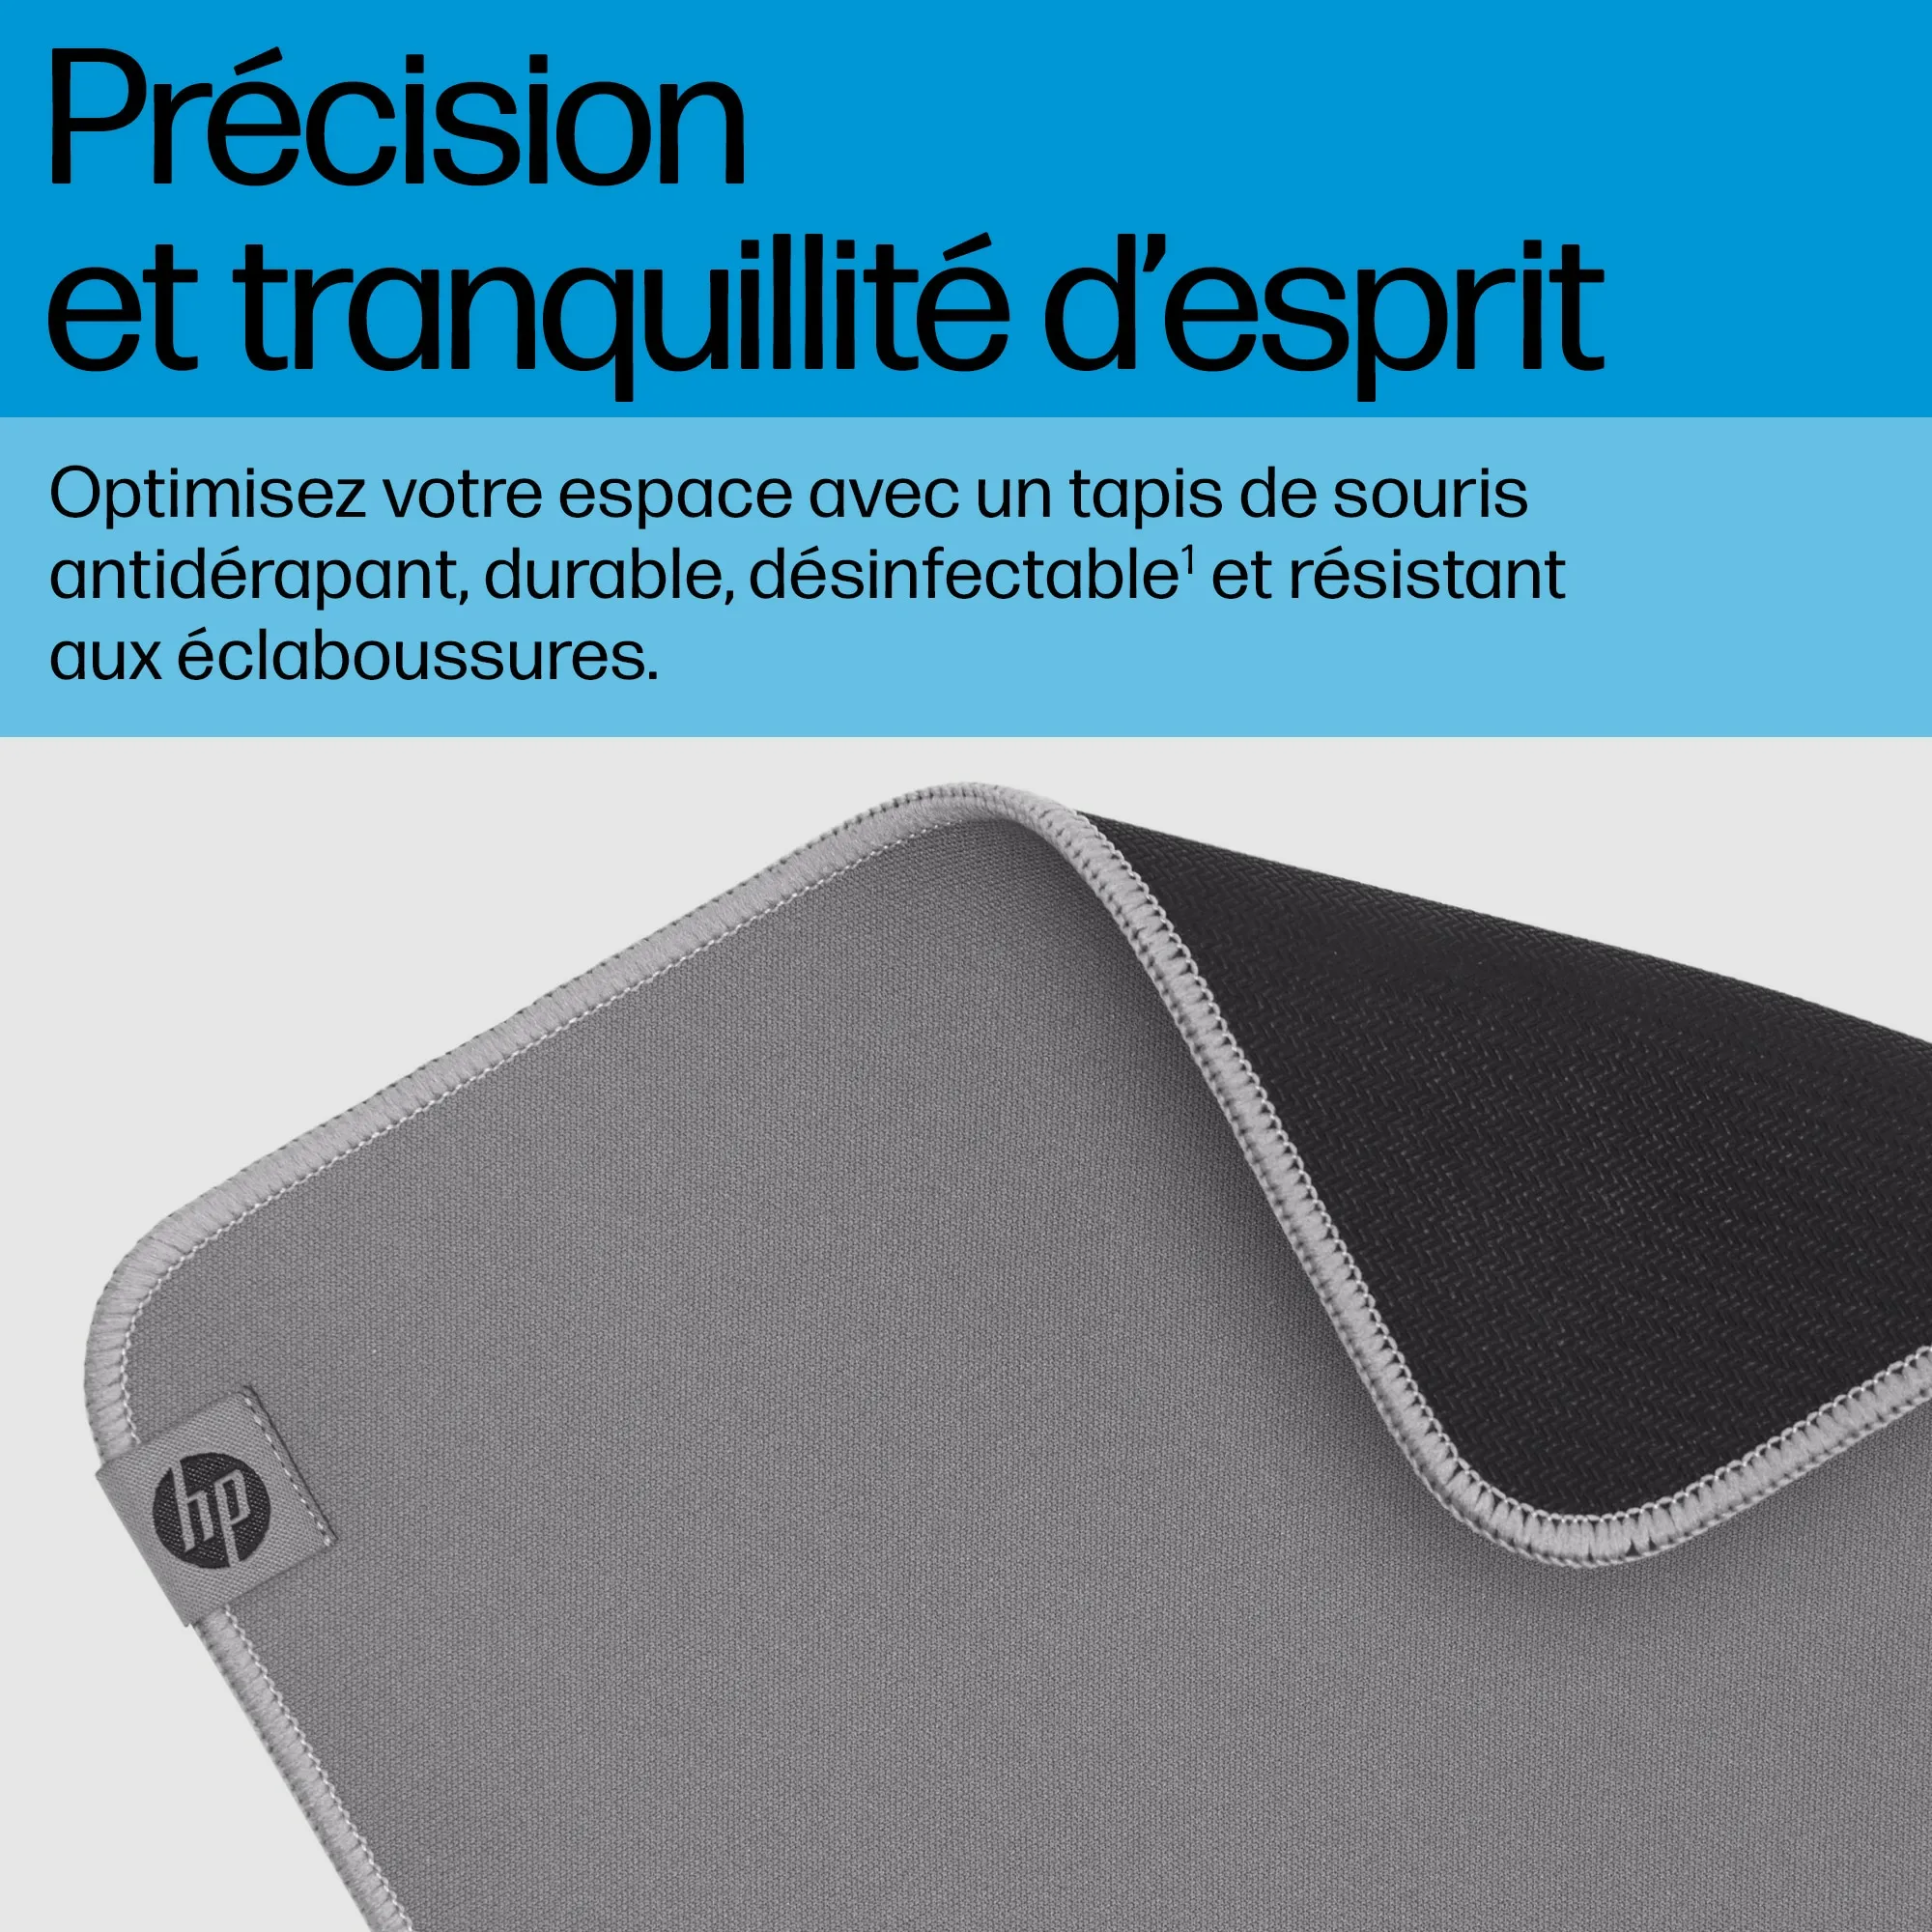 Vente HP 105 Sanitizable Mouse Pad HP au meilleur prix - visuel 4